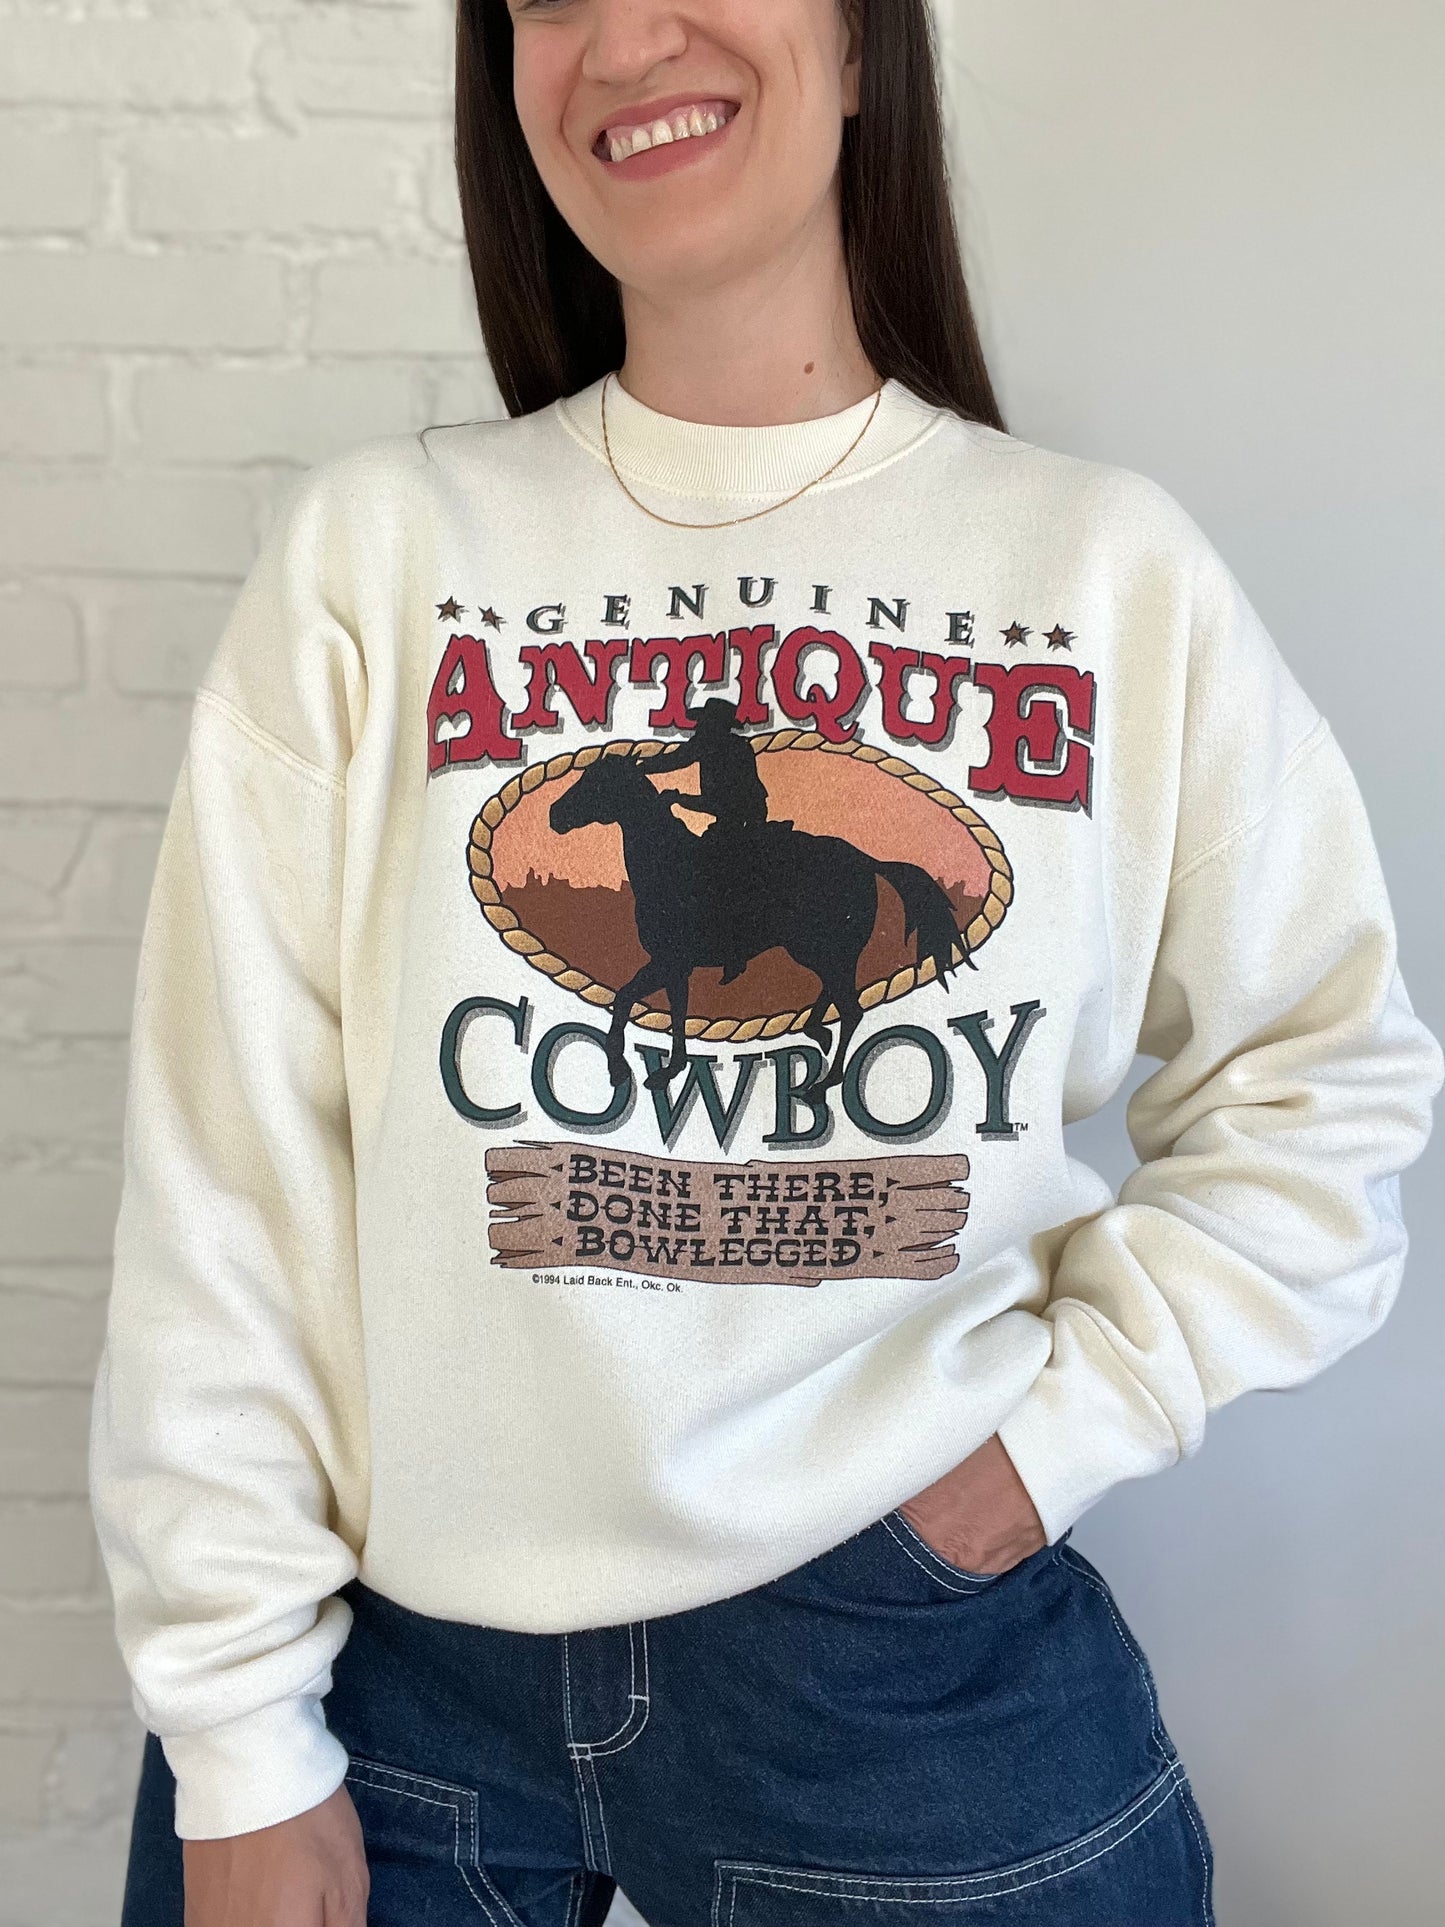 Antique Cowboy Sweater - Size L/XL